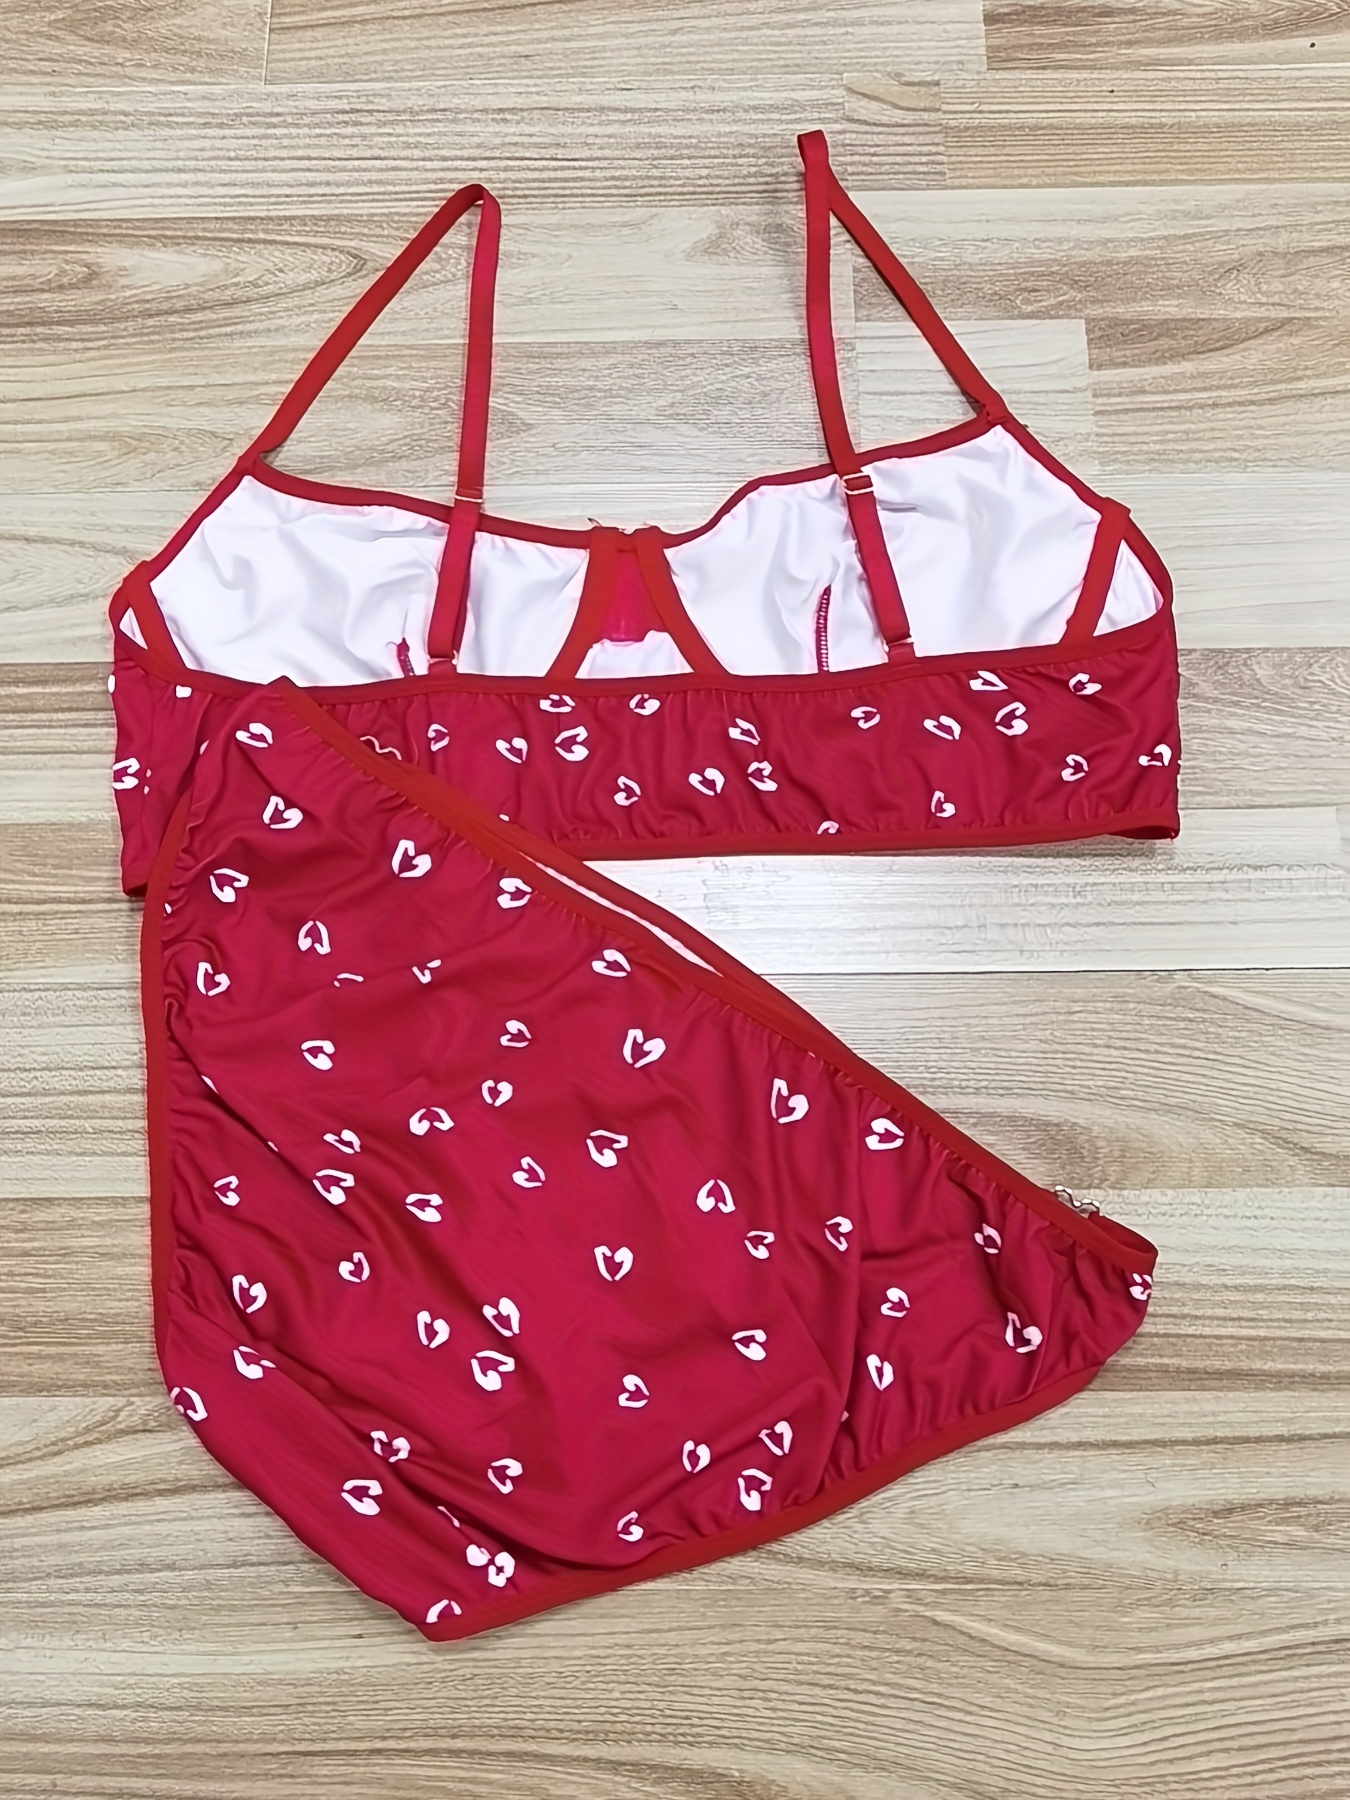 Sexy Print Red Plus Size Bra & Panty Sets (Women's)